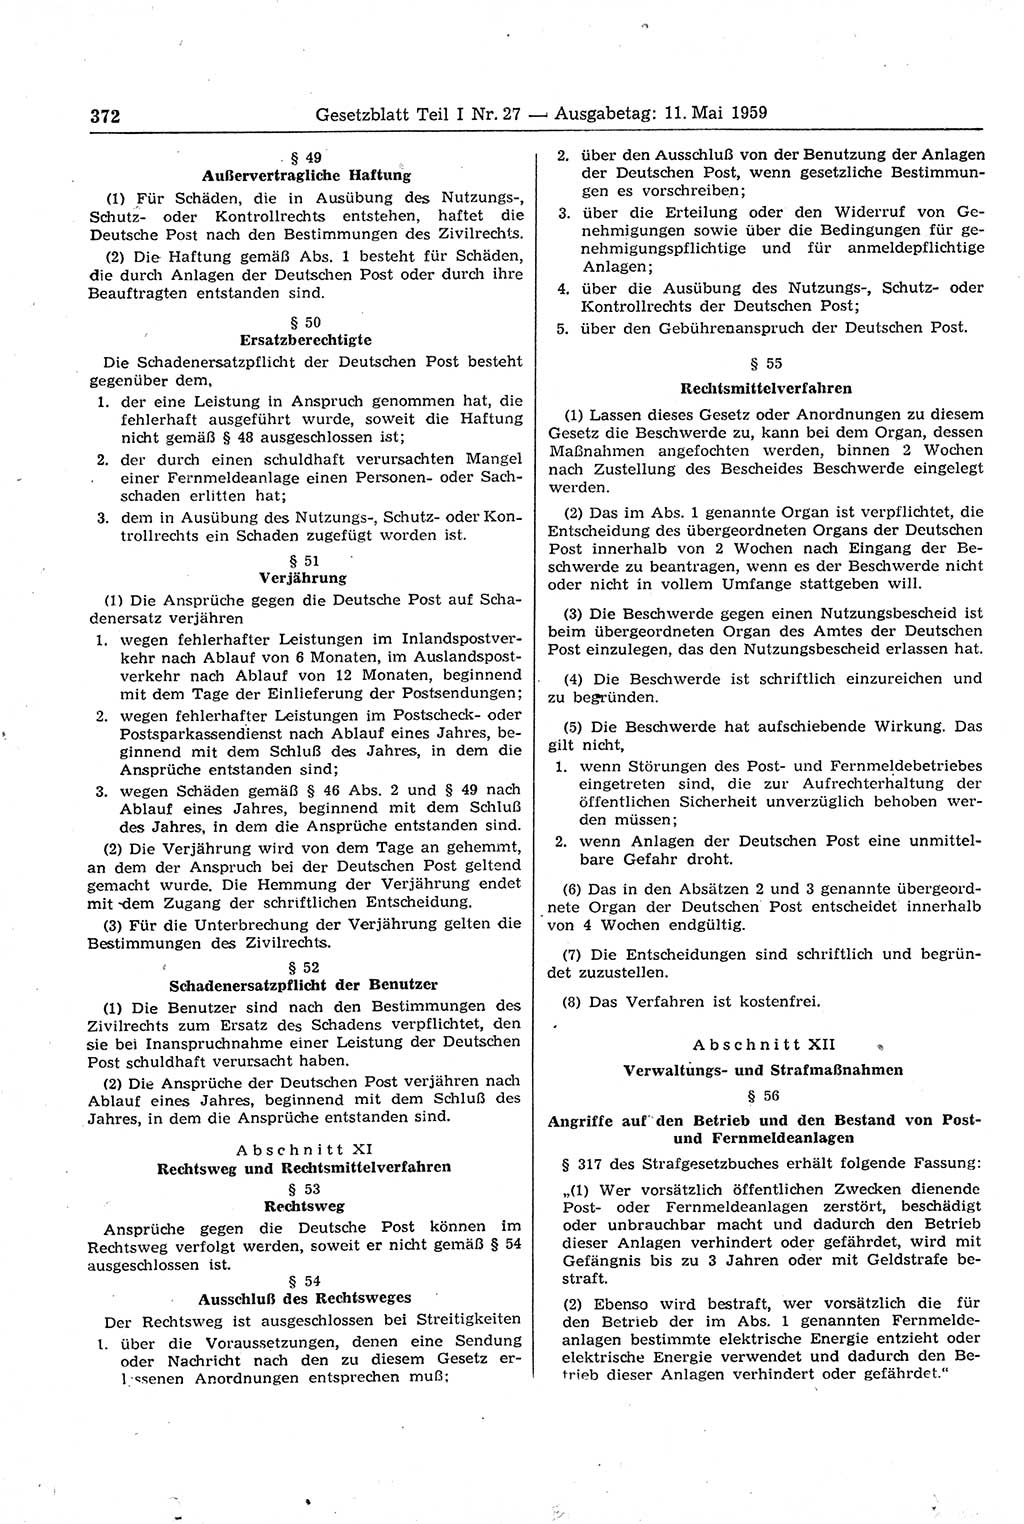 Gesetzblatt (GBl.) der Deutschen Demokratischen Republik (DDR) Teil Ⅰ 1959, Seite 372 (GBl. DDR Ⅰ 1959, S. 372)